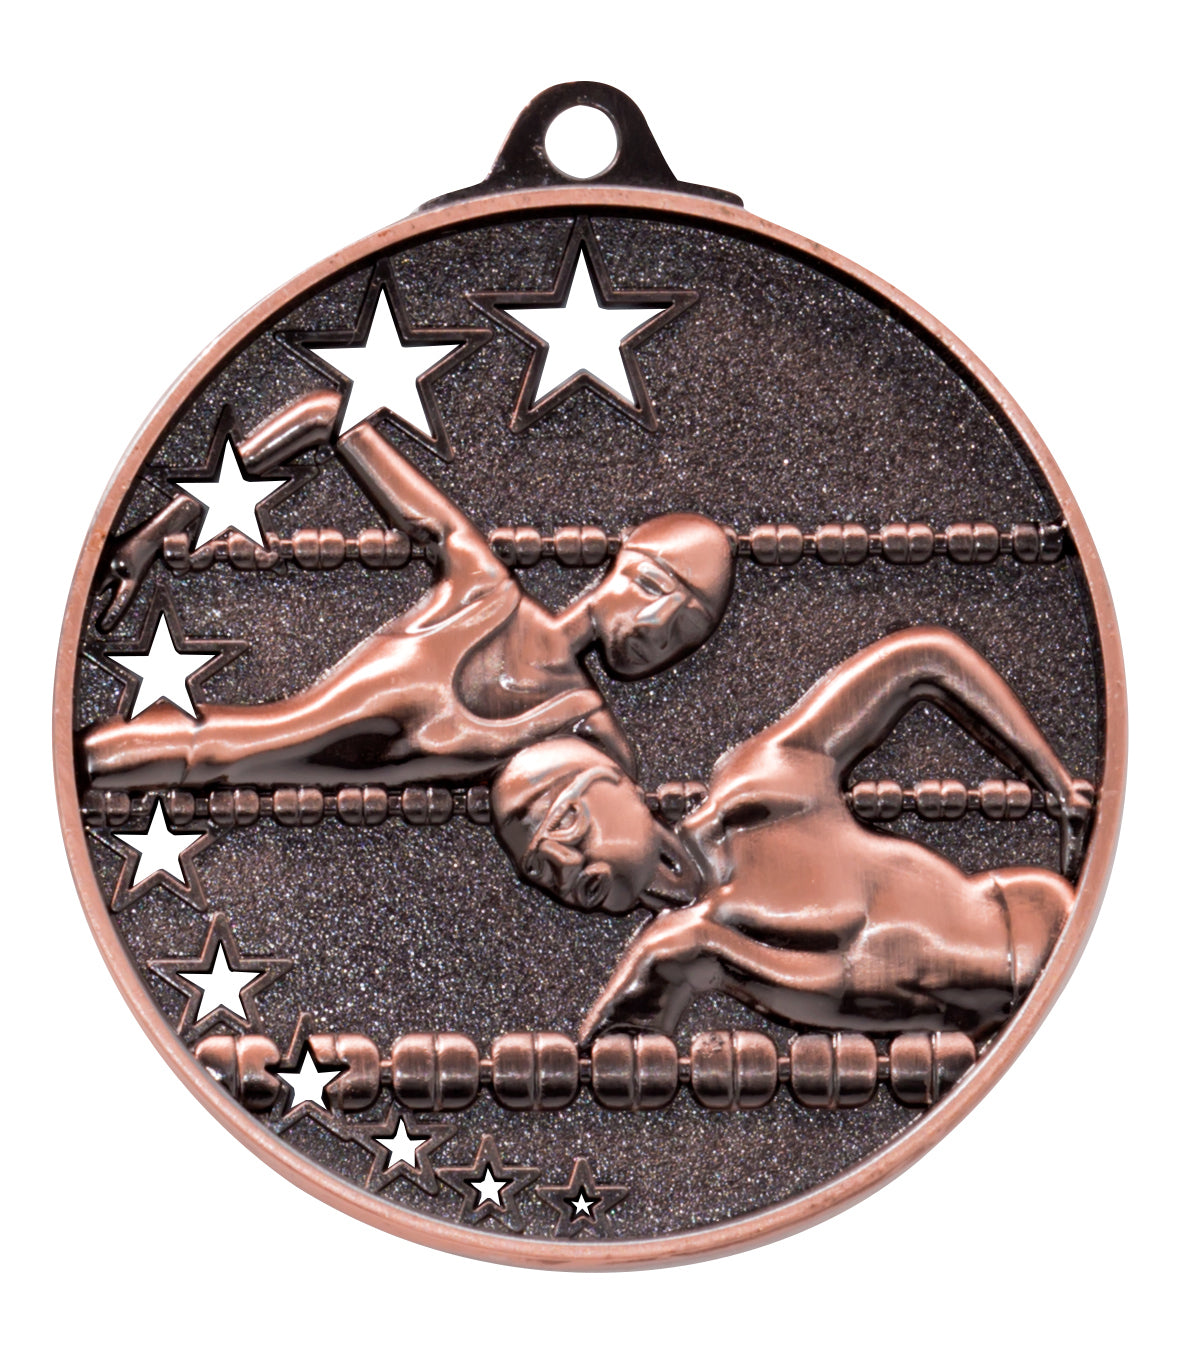 Die Schwimmen Medaillen Halle 52 mm PK79224 ist eine bronzene Schwimmmedaille, die zwei Schwimmer im Freistil zeigt, umgeben von Sternen, aus hochwertigem Material gefertigt und mit einem exklusiven Design ausgestattet.